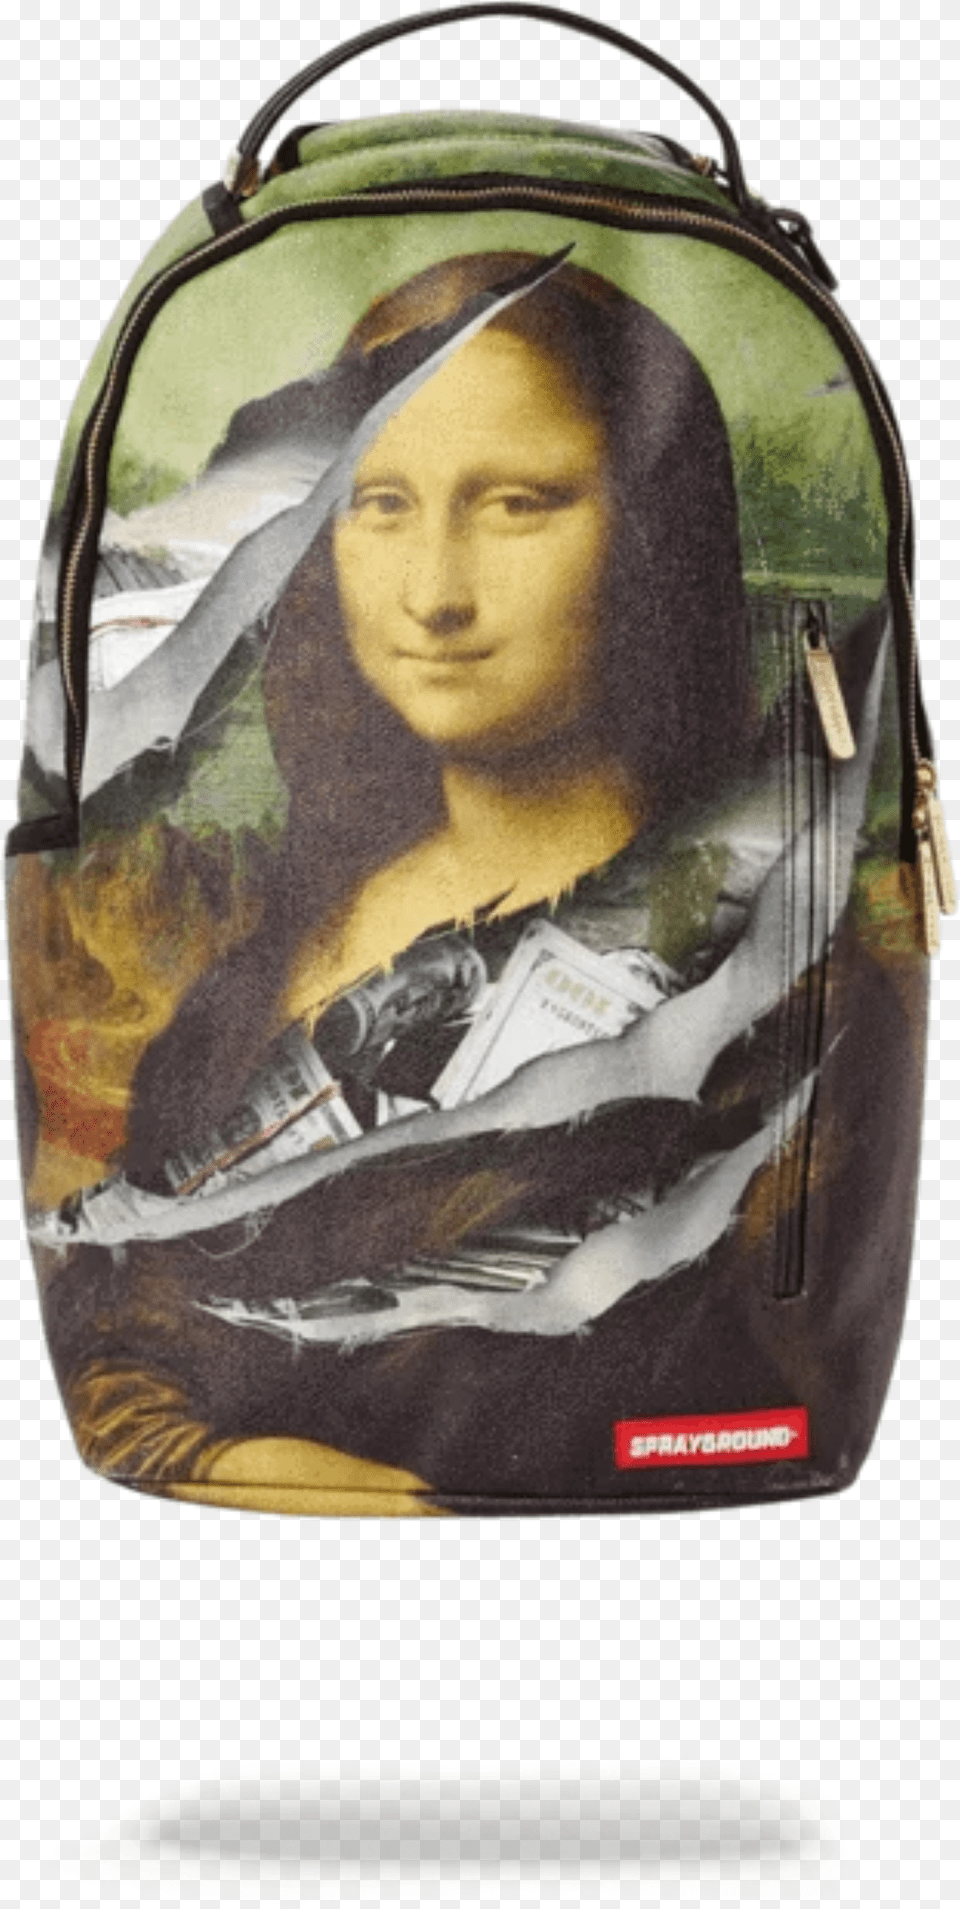 Leonardo Da Vinci Mona Lisa Art Print Poster, Accessories, Bag, Handbag, Adult Free Transparent Png